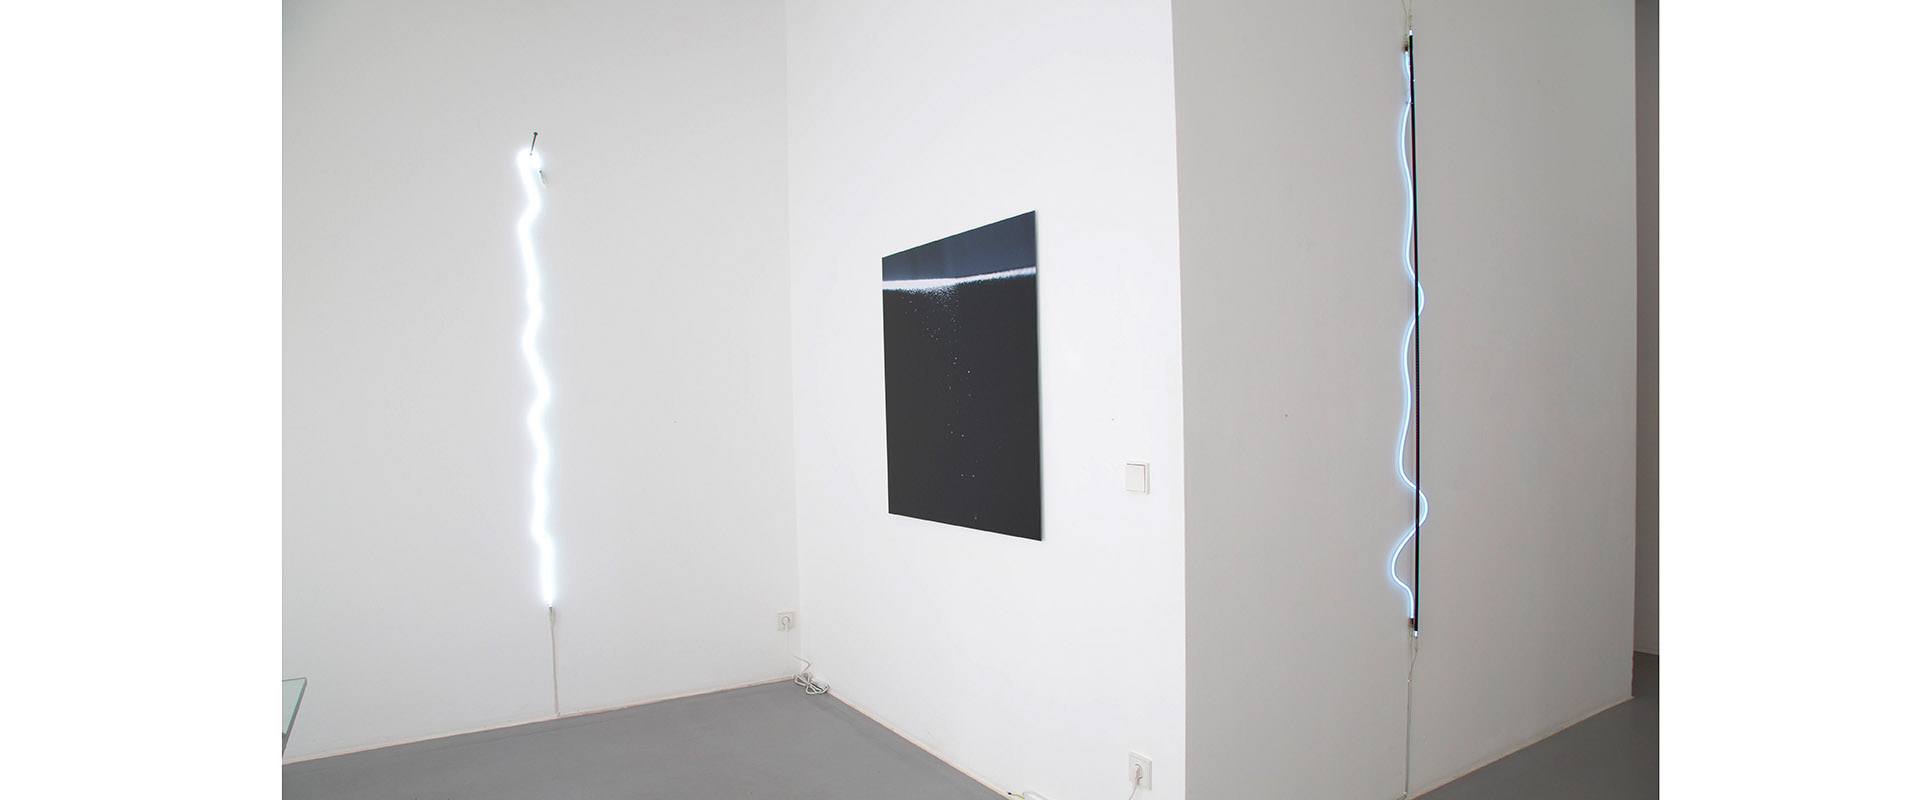 Ausstellungsansicht "FarbeLicht - LichtFarbe", Galerie Renate Bender 2017